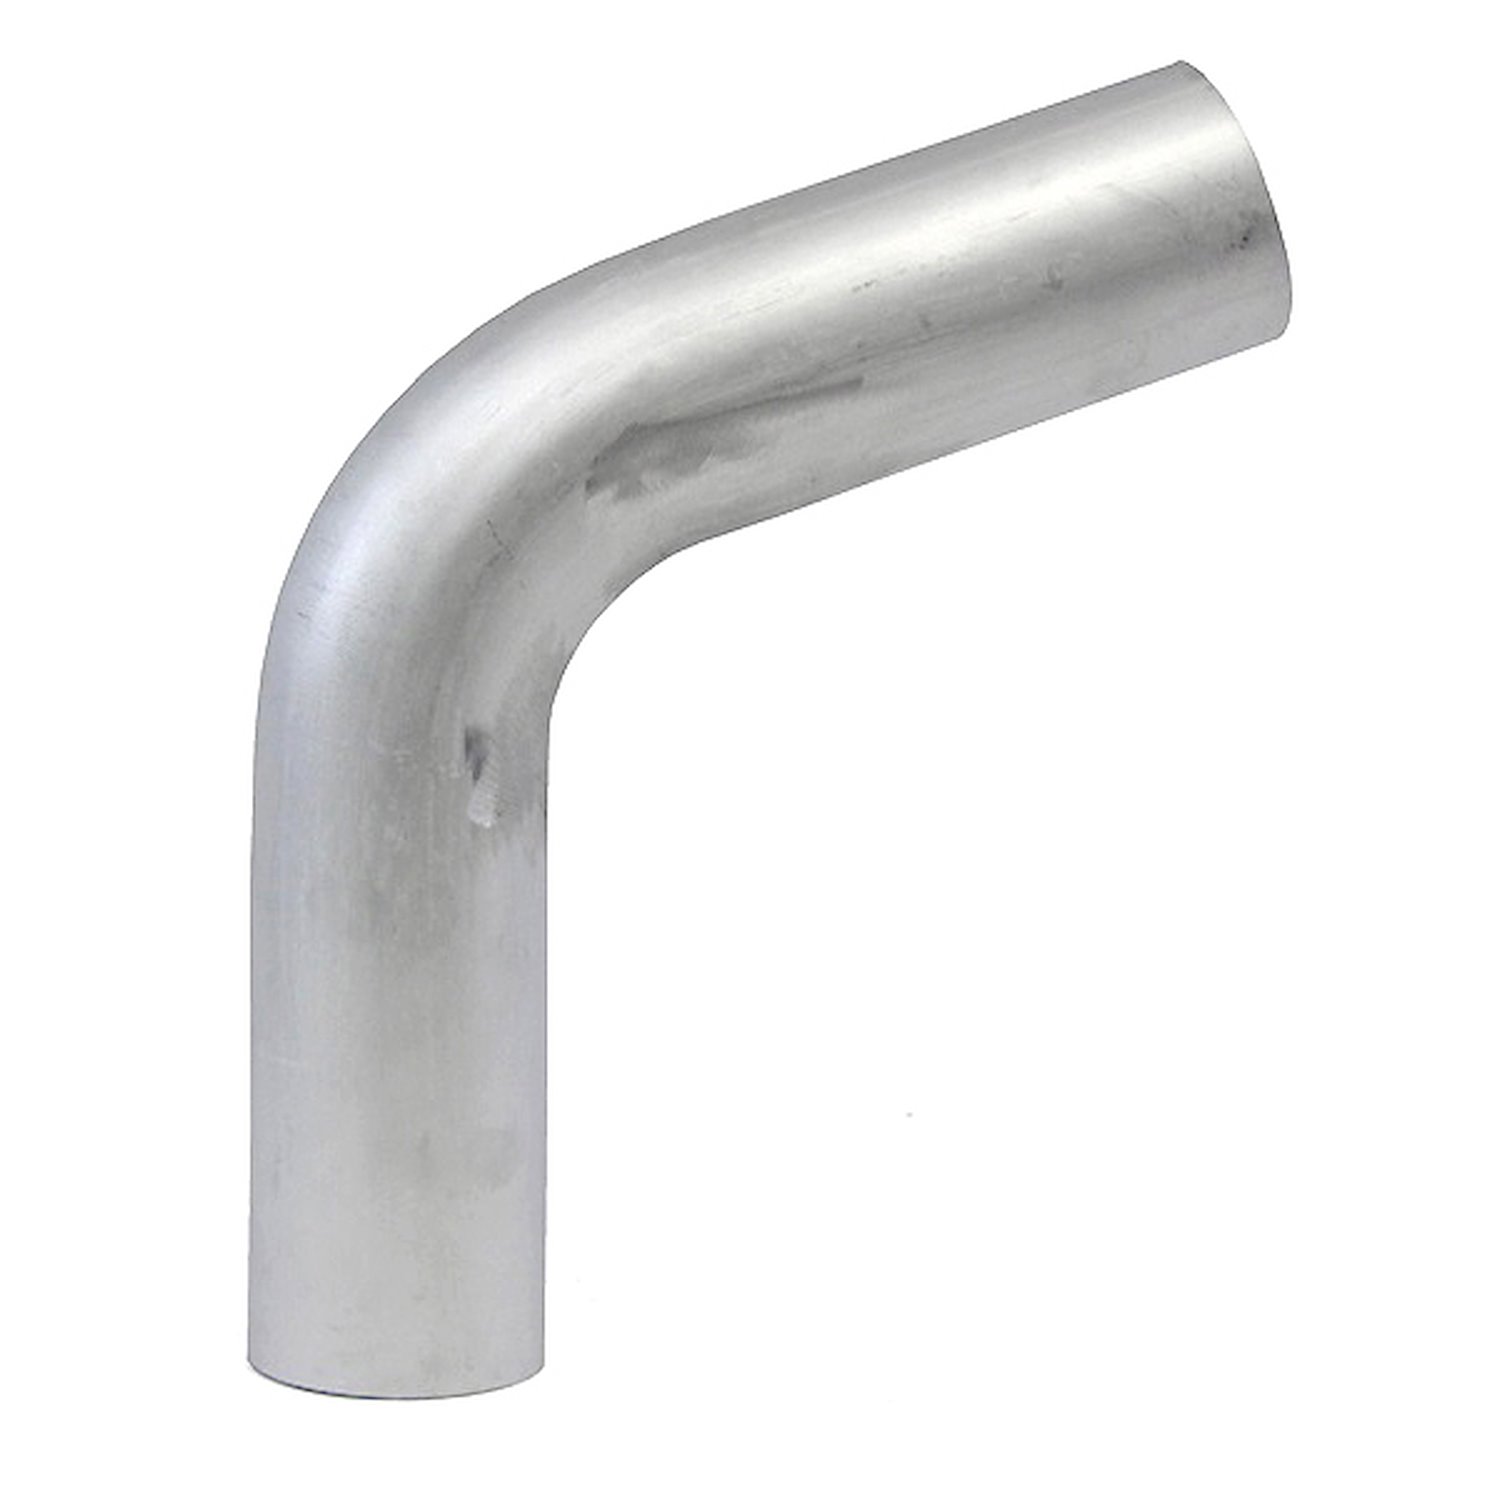 AT70-350-CLR-56 Aluminum Elbow Tube, 6061 Aluminum, 70-Degree Bend Elbow Tubing, 3-1/2 in. OD, Large Radius, 5-5/8 in. CLR